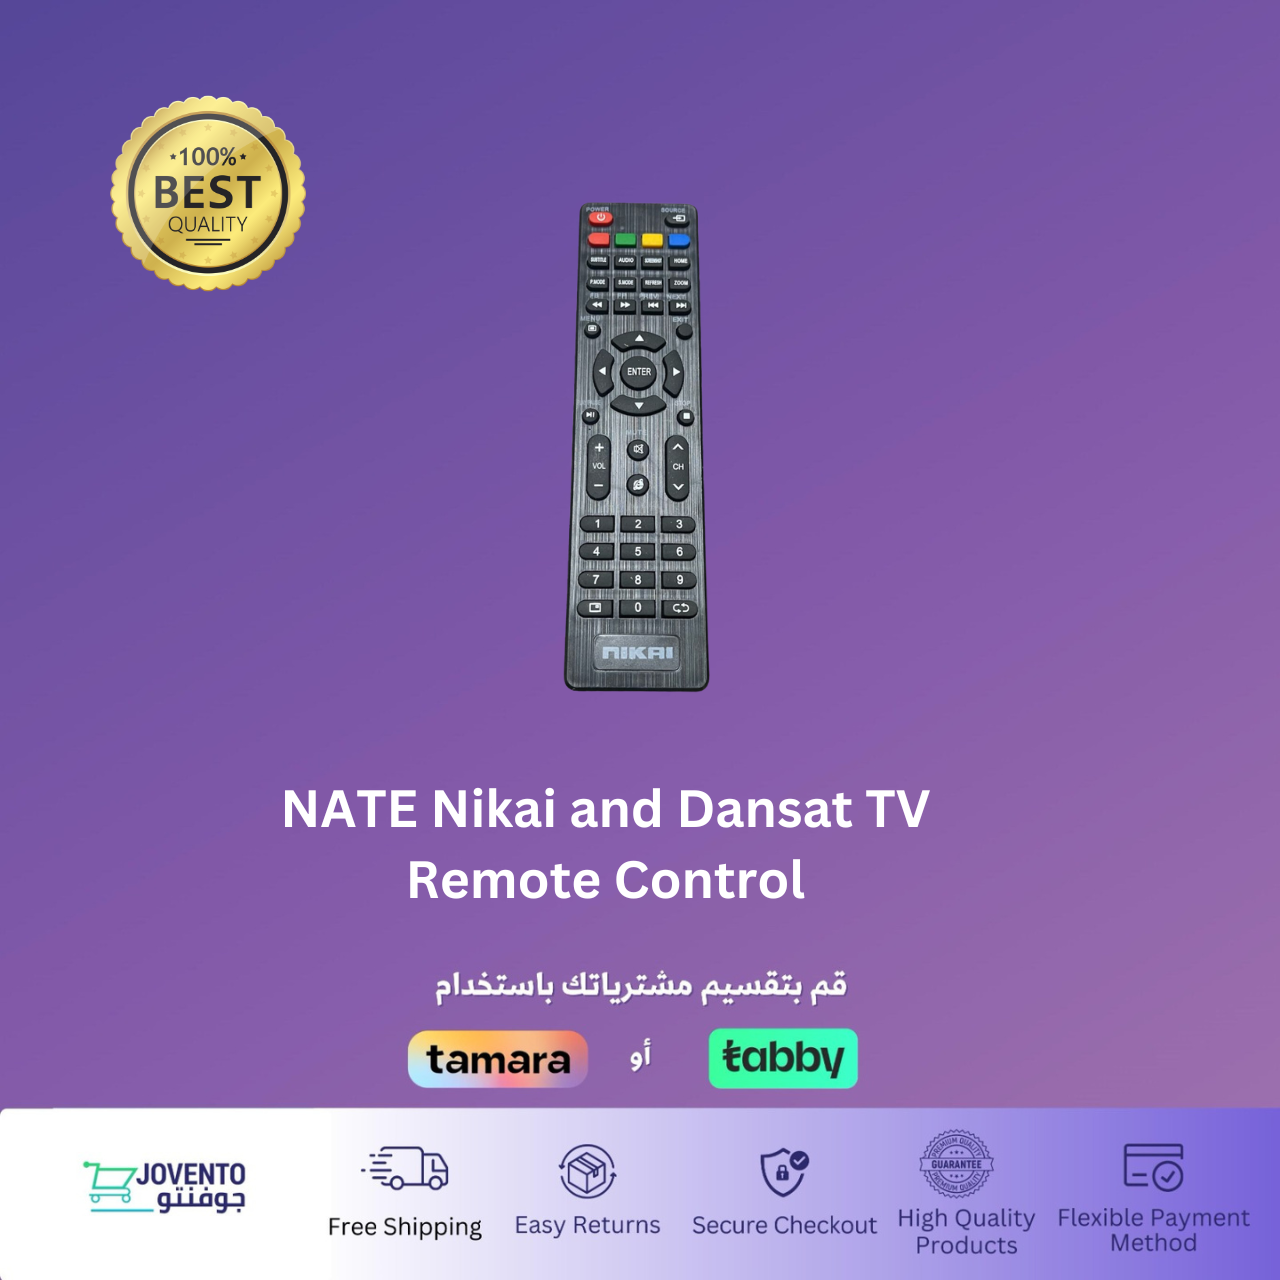 NATE Nikai and Dansat TV Remote Control